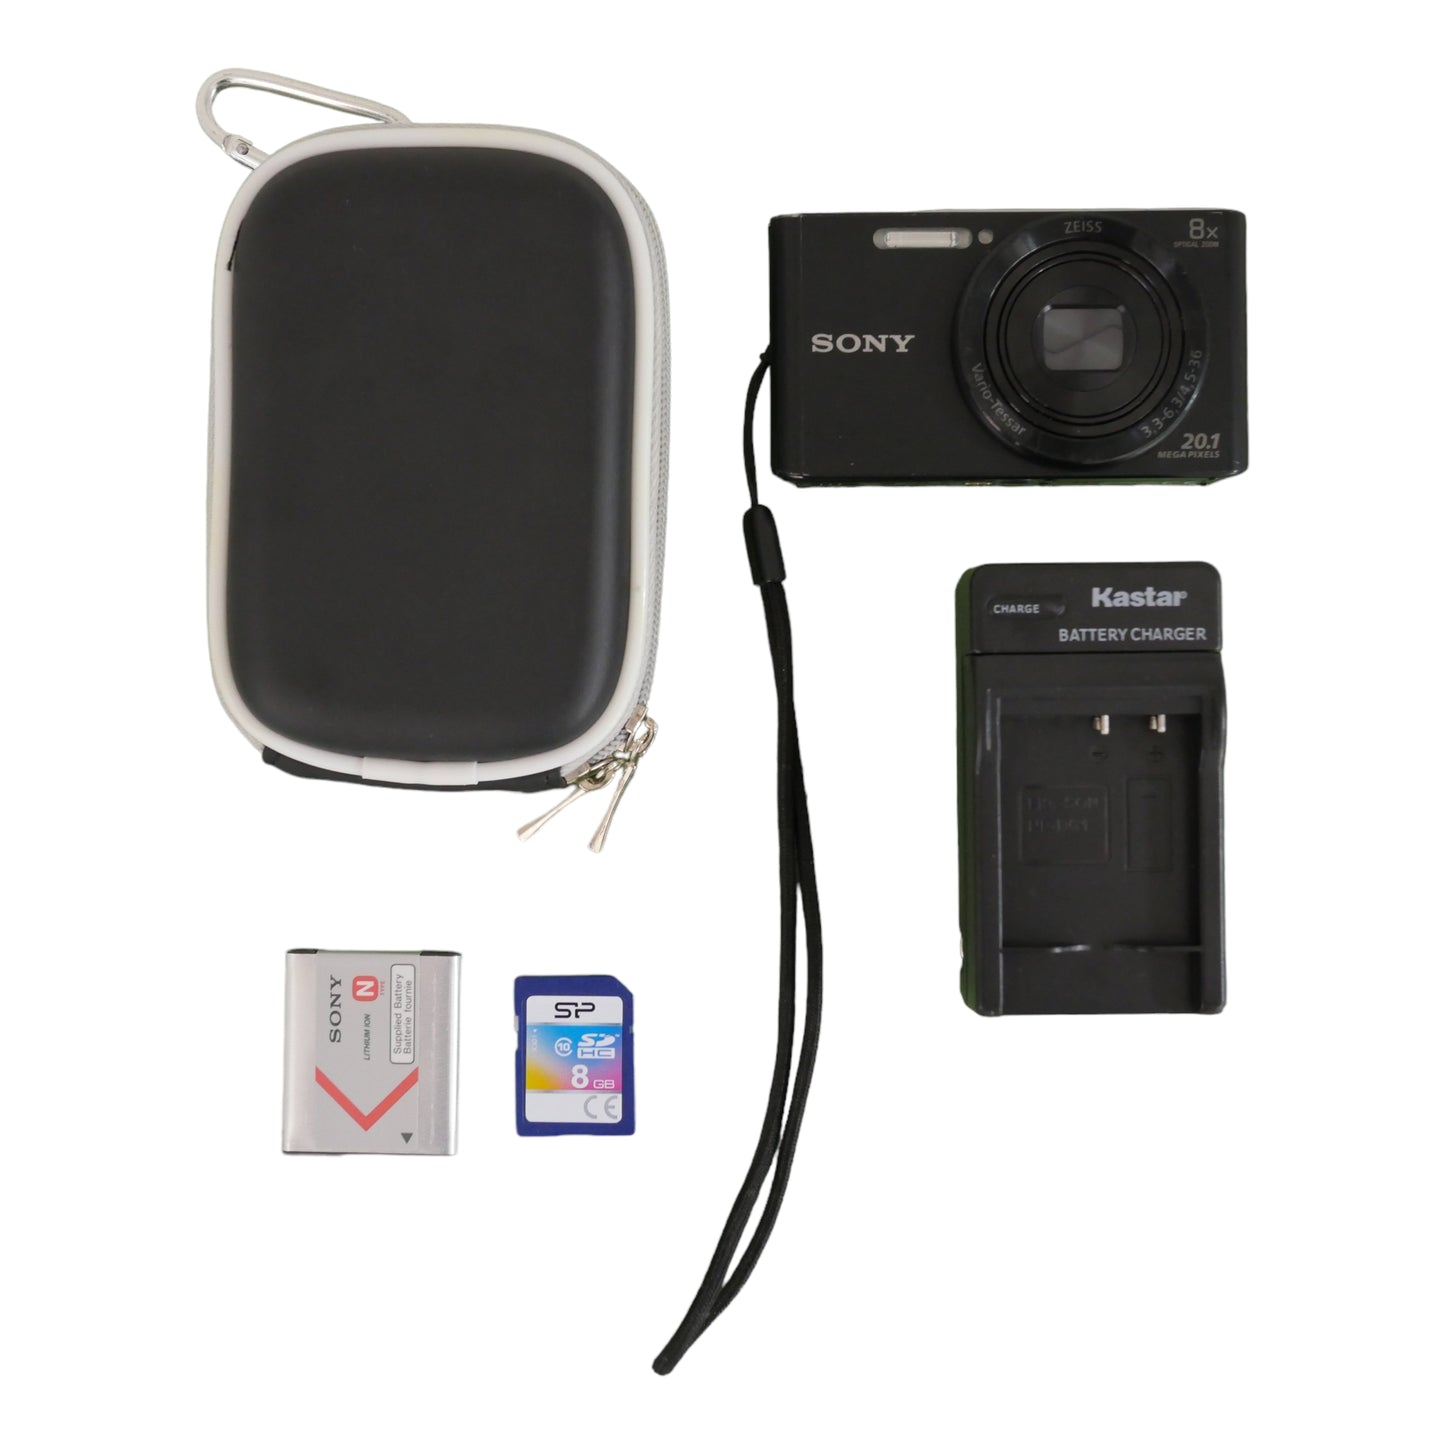 Sony Cybershot DSC - W830 - 20.1 Megapixel Camera